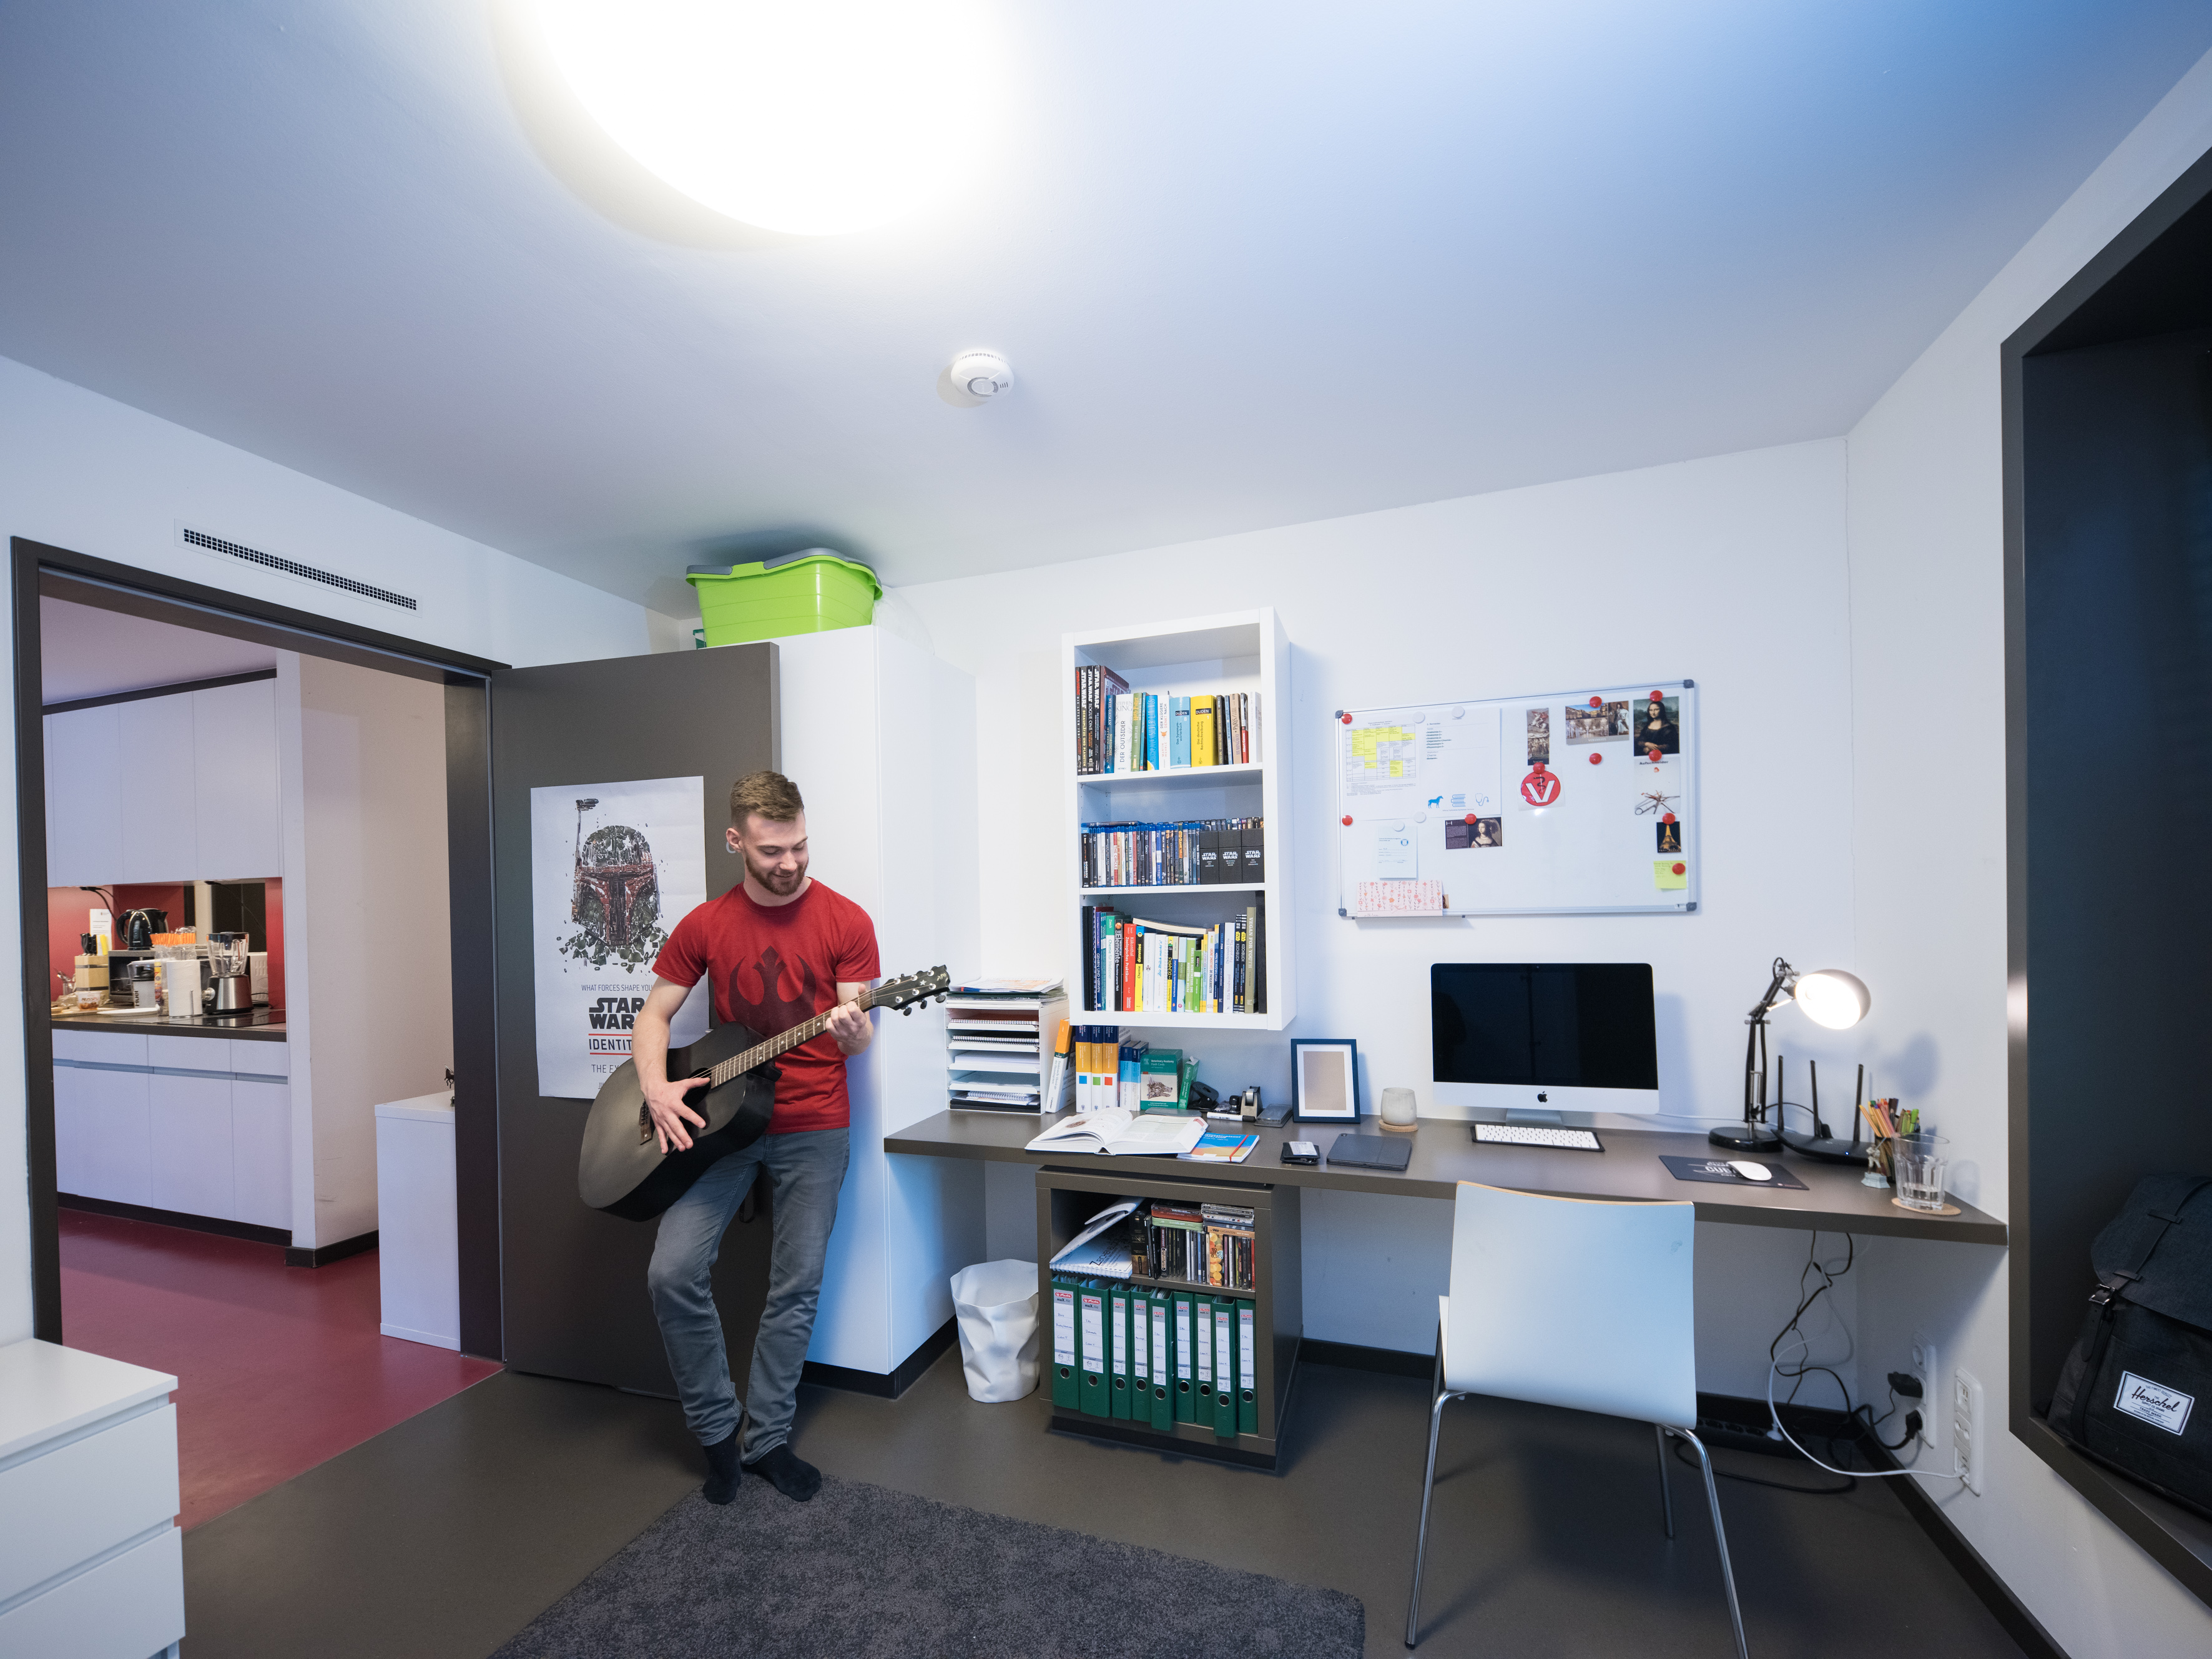 Junger Mann in rotem T-Shirt spielt auf seiner Gitarre, gelehnt an eine offene Tür, man sieht einen aufgeräumten Schreibtisch und im Hintergrund eine Küche.  